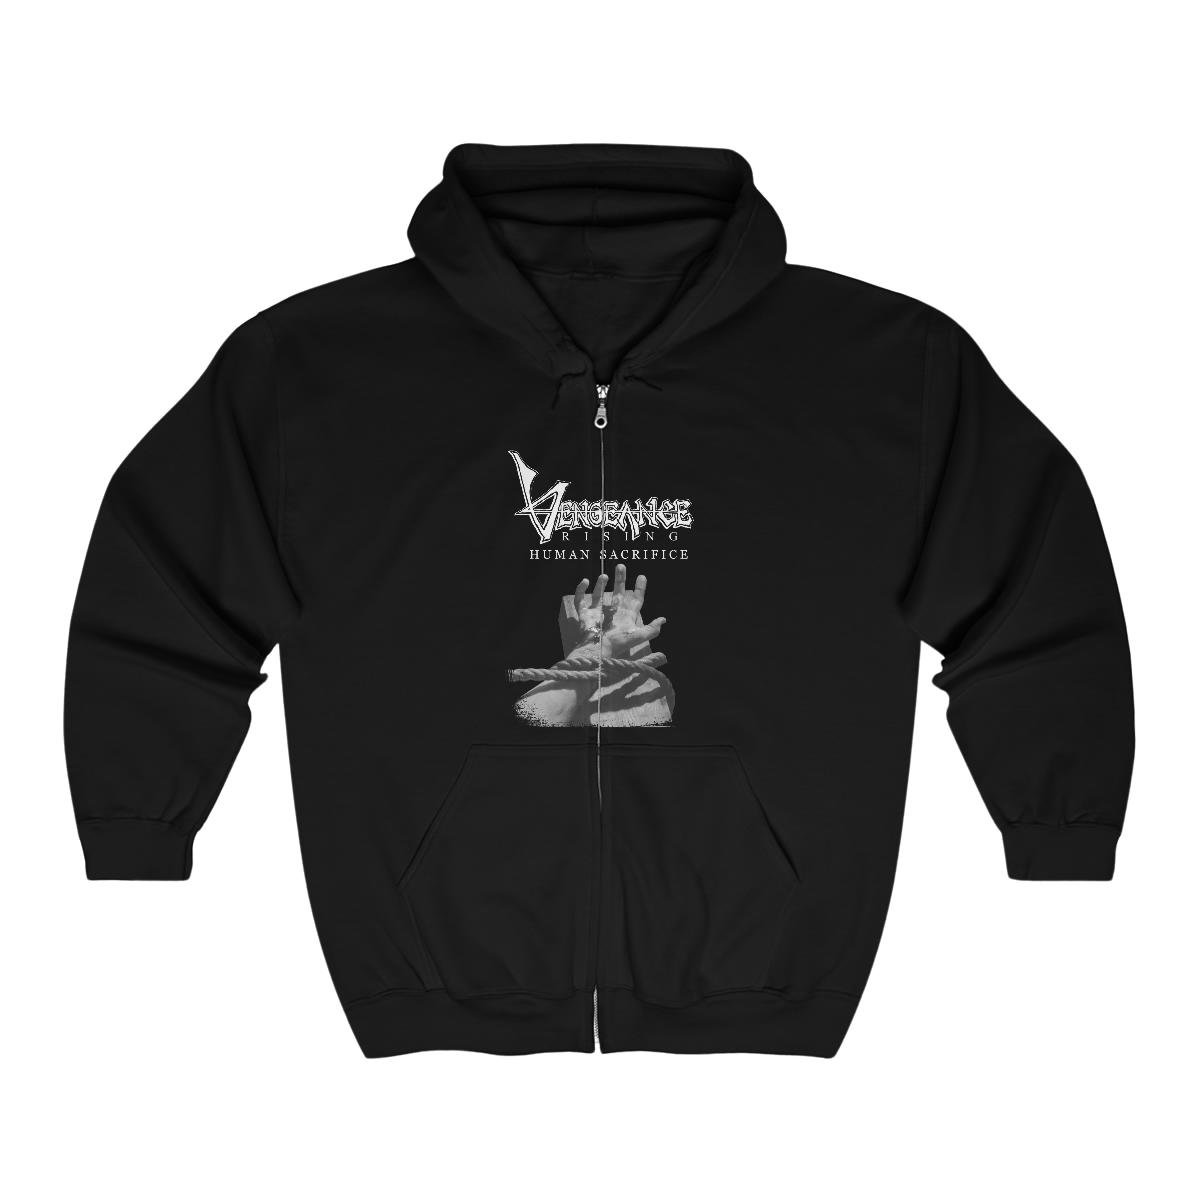 Vengeance Rising – Human Sacrifice 35th Anniversary Full Zip Hooded Sweatshirt